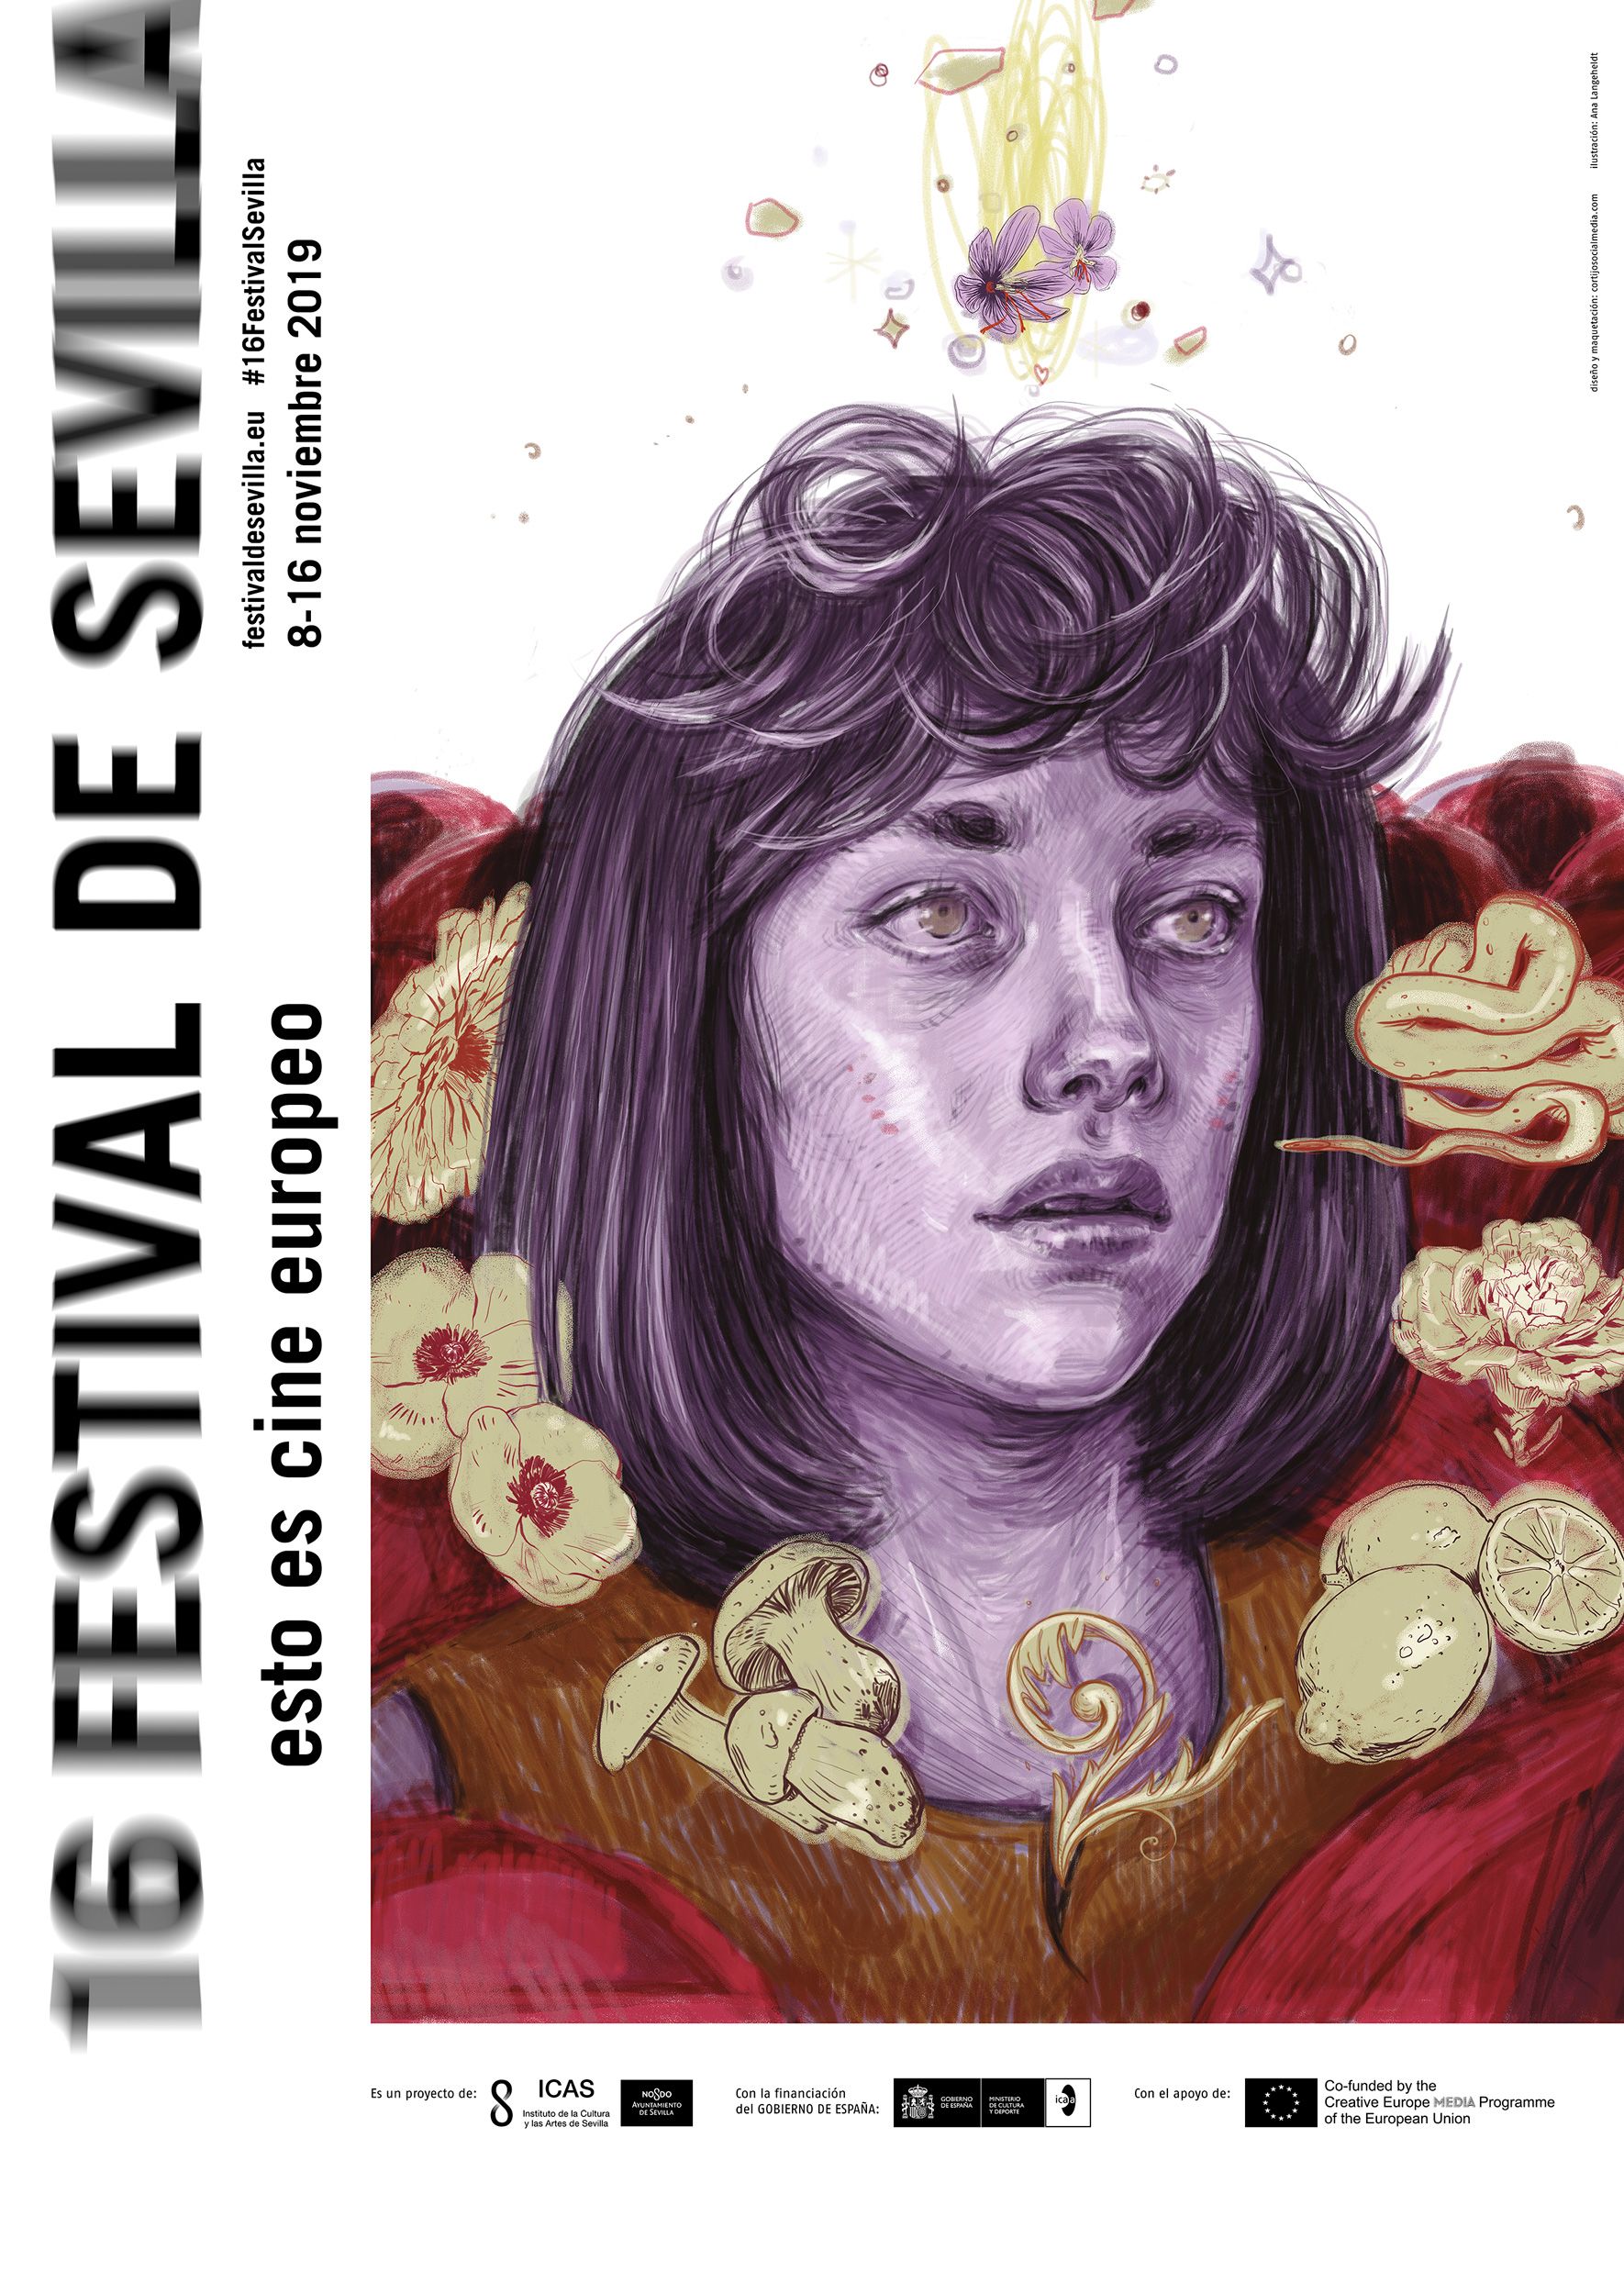 Festival de Cine Europeo de Sevilla